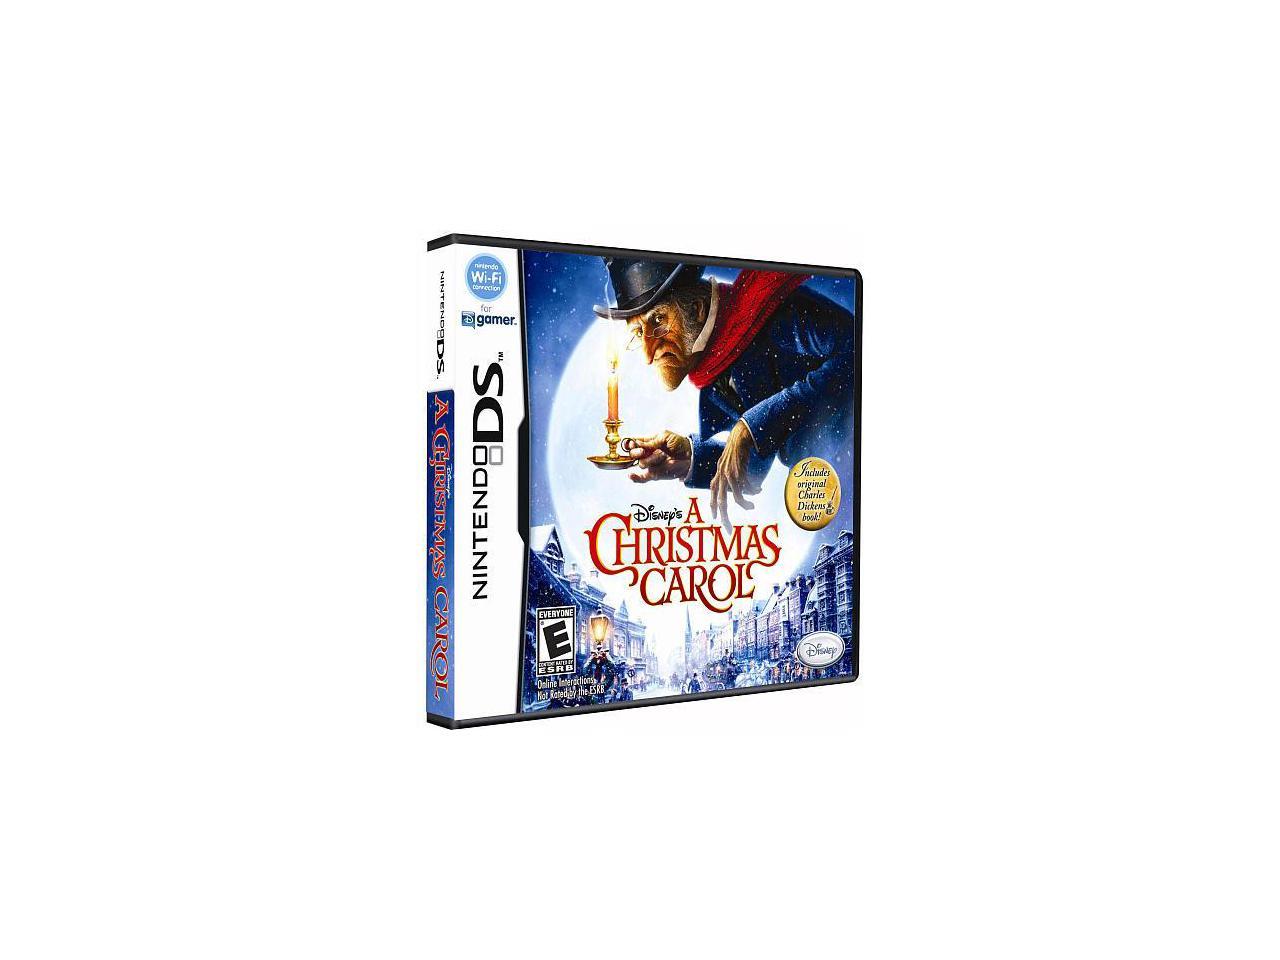 Disney's A Christmas Carol Nintendo DS Game 712725017149 | eBay